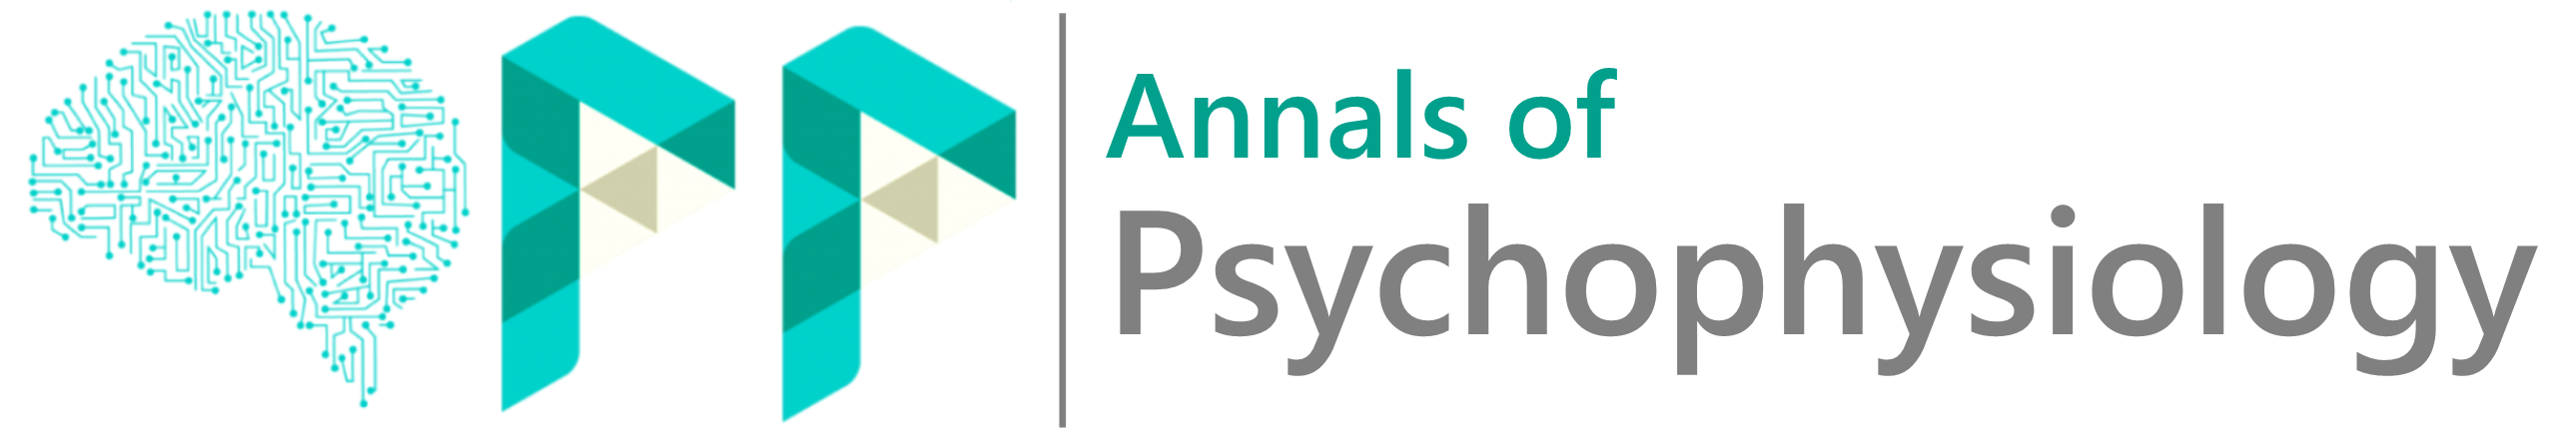 Annals of Psychophysiology